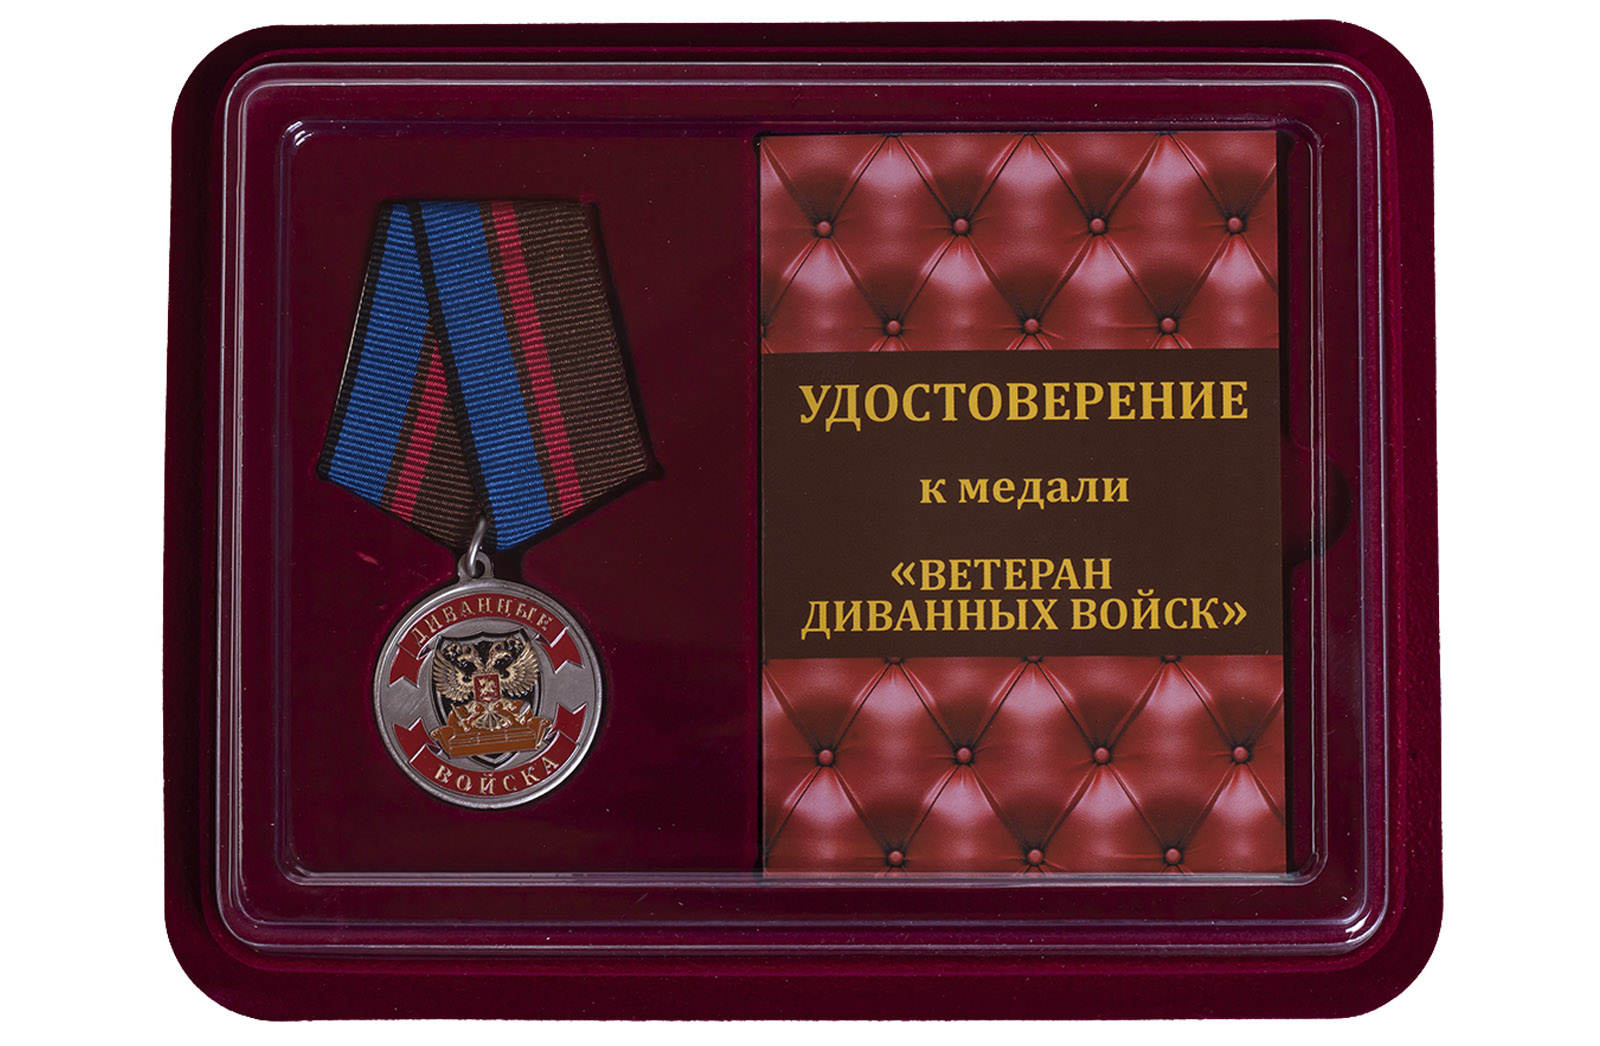 Купить сувенирную медаль Ветеран Диванных войск оптом или в розницу